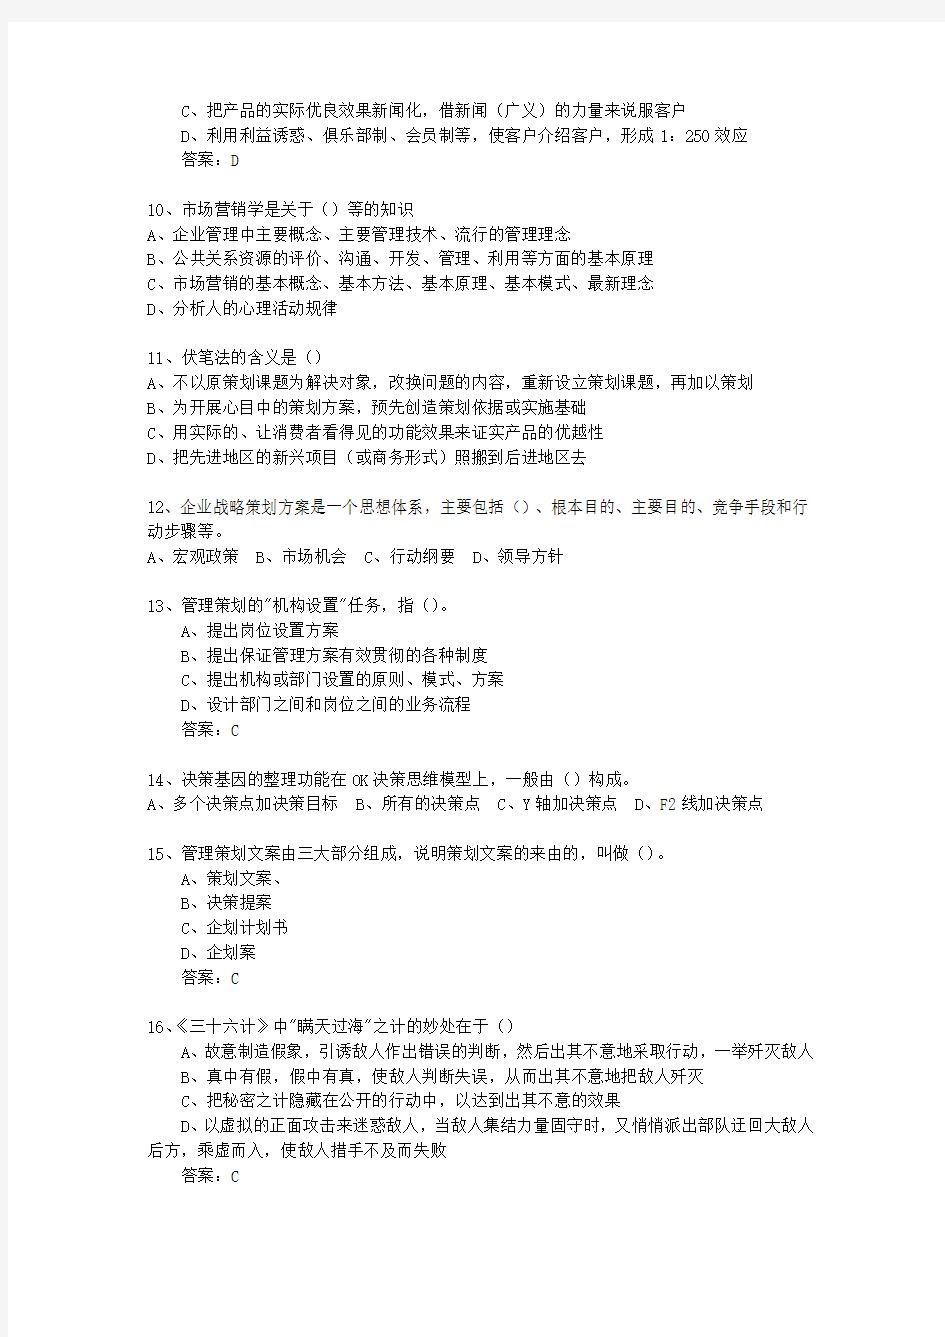 2010年黑龙江省初级商务策划师最新考试试题库(完整版)